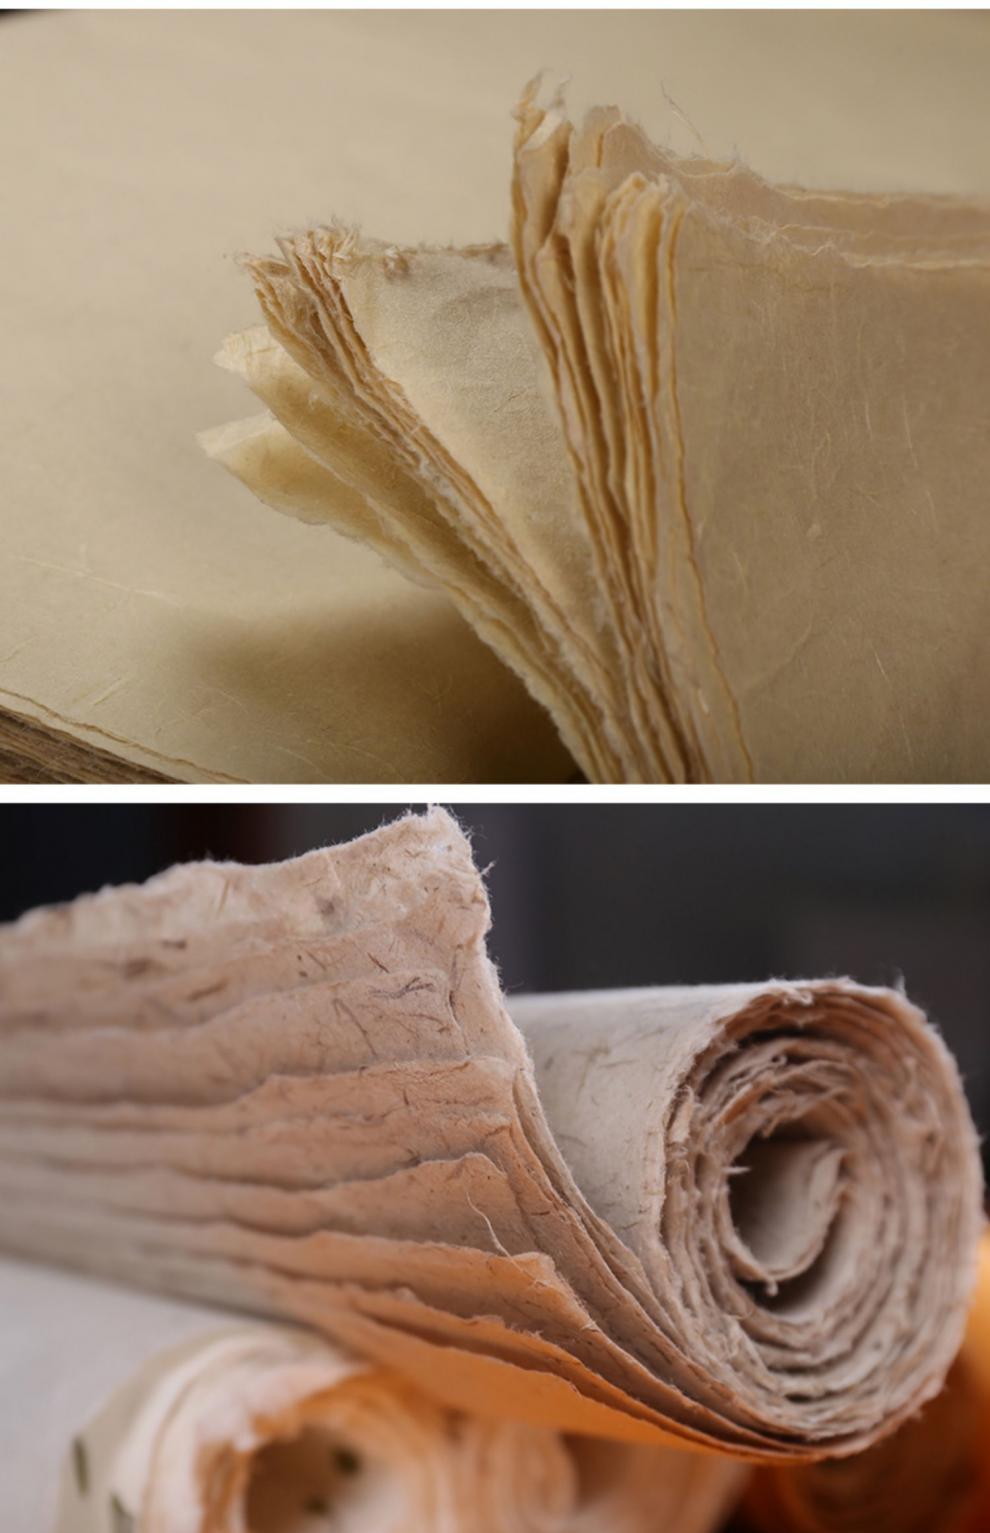 加工方法分类:其他材质:皮纸制作工艺:手工商品毛重:1.